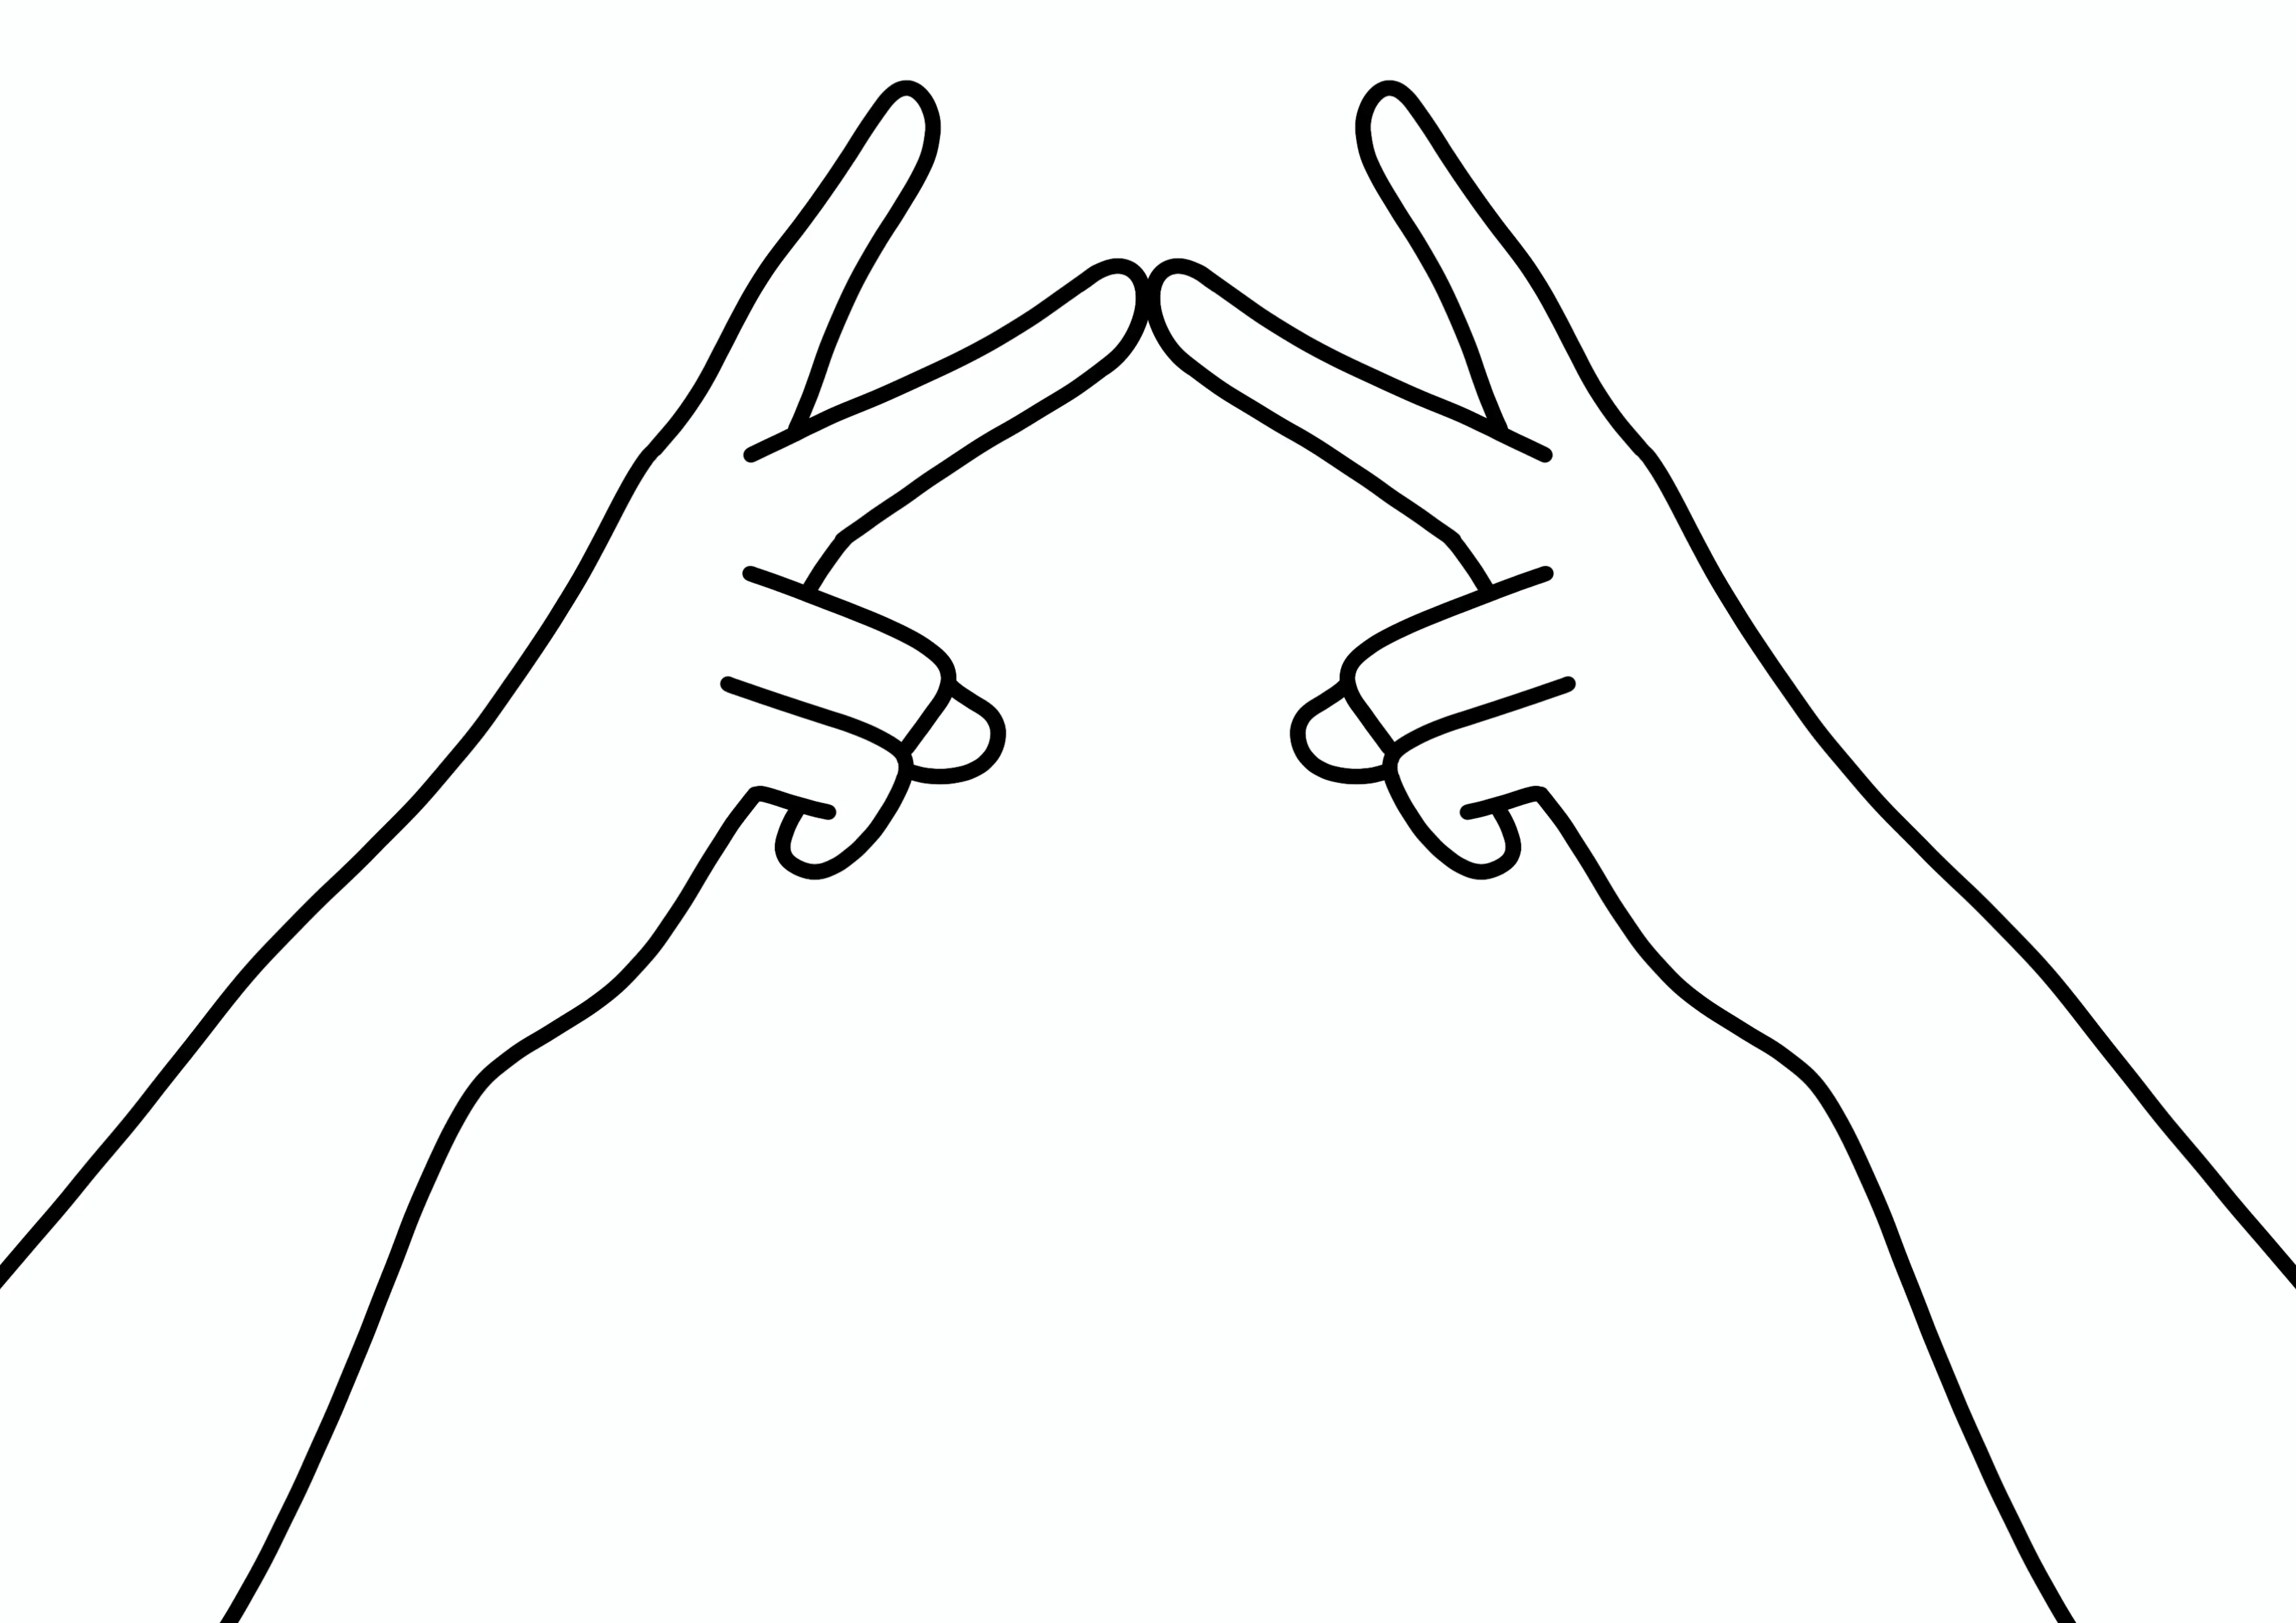 Анимированное изображение рук, показывающих жесты на РЖЯ